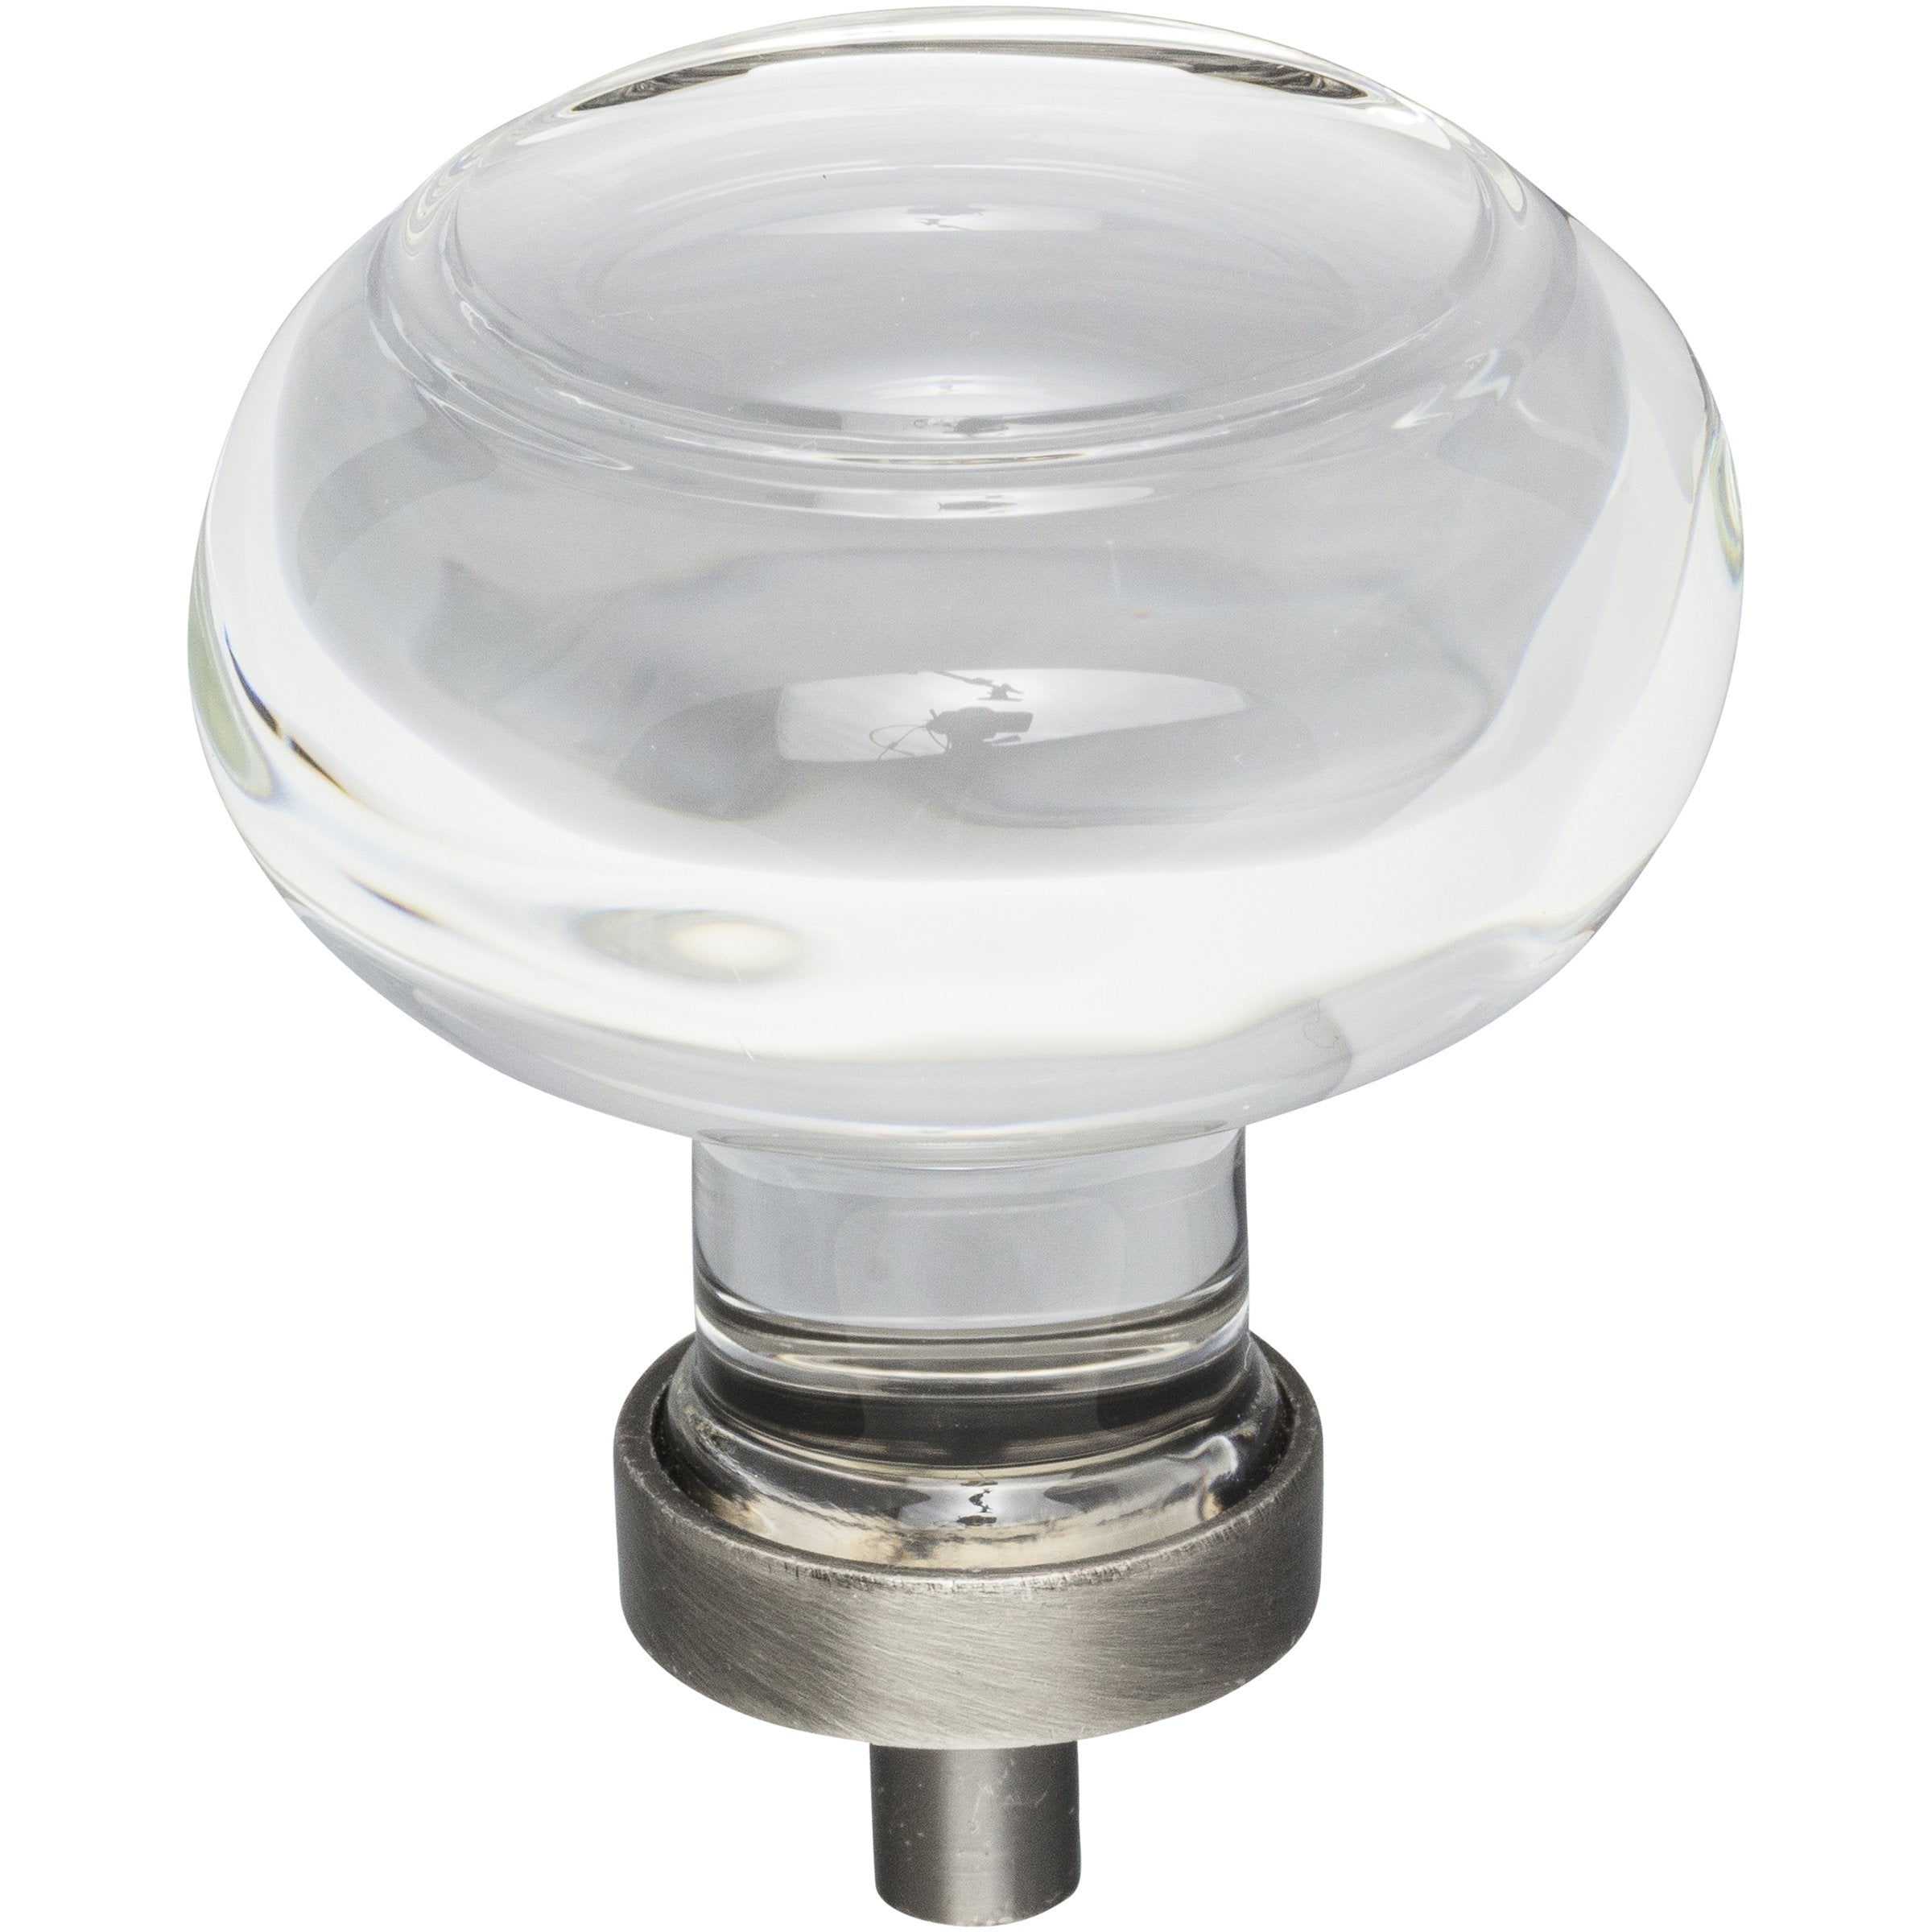 Jeffrey Alexander Harlow Button Glass Knob-DirectSinks